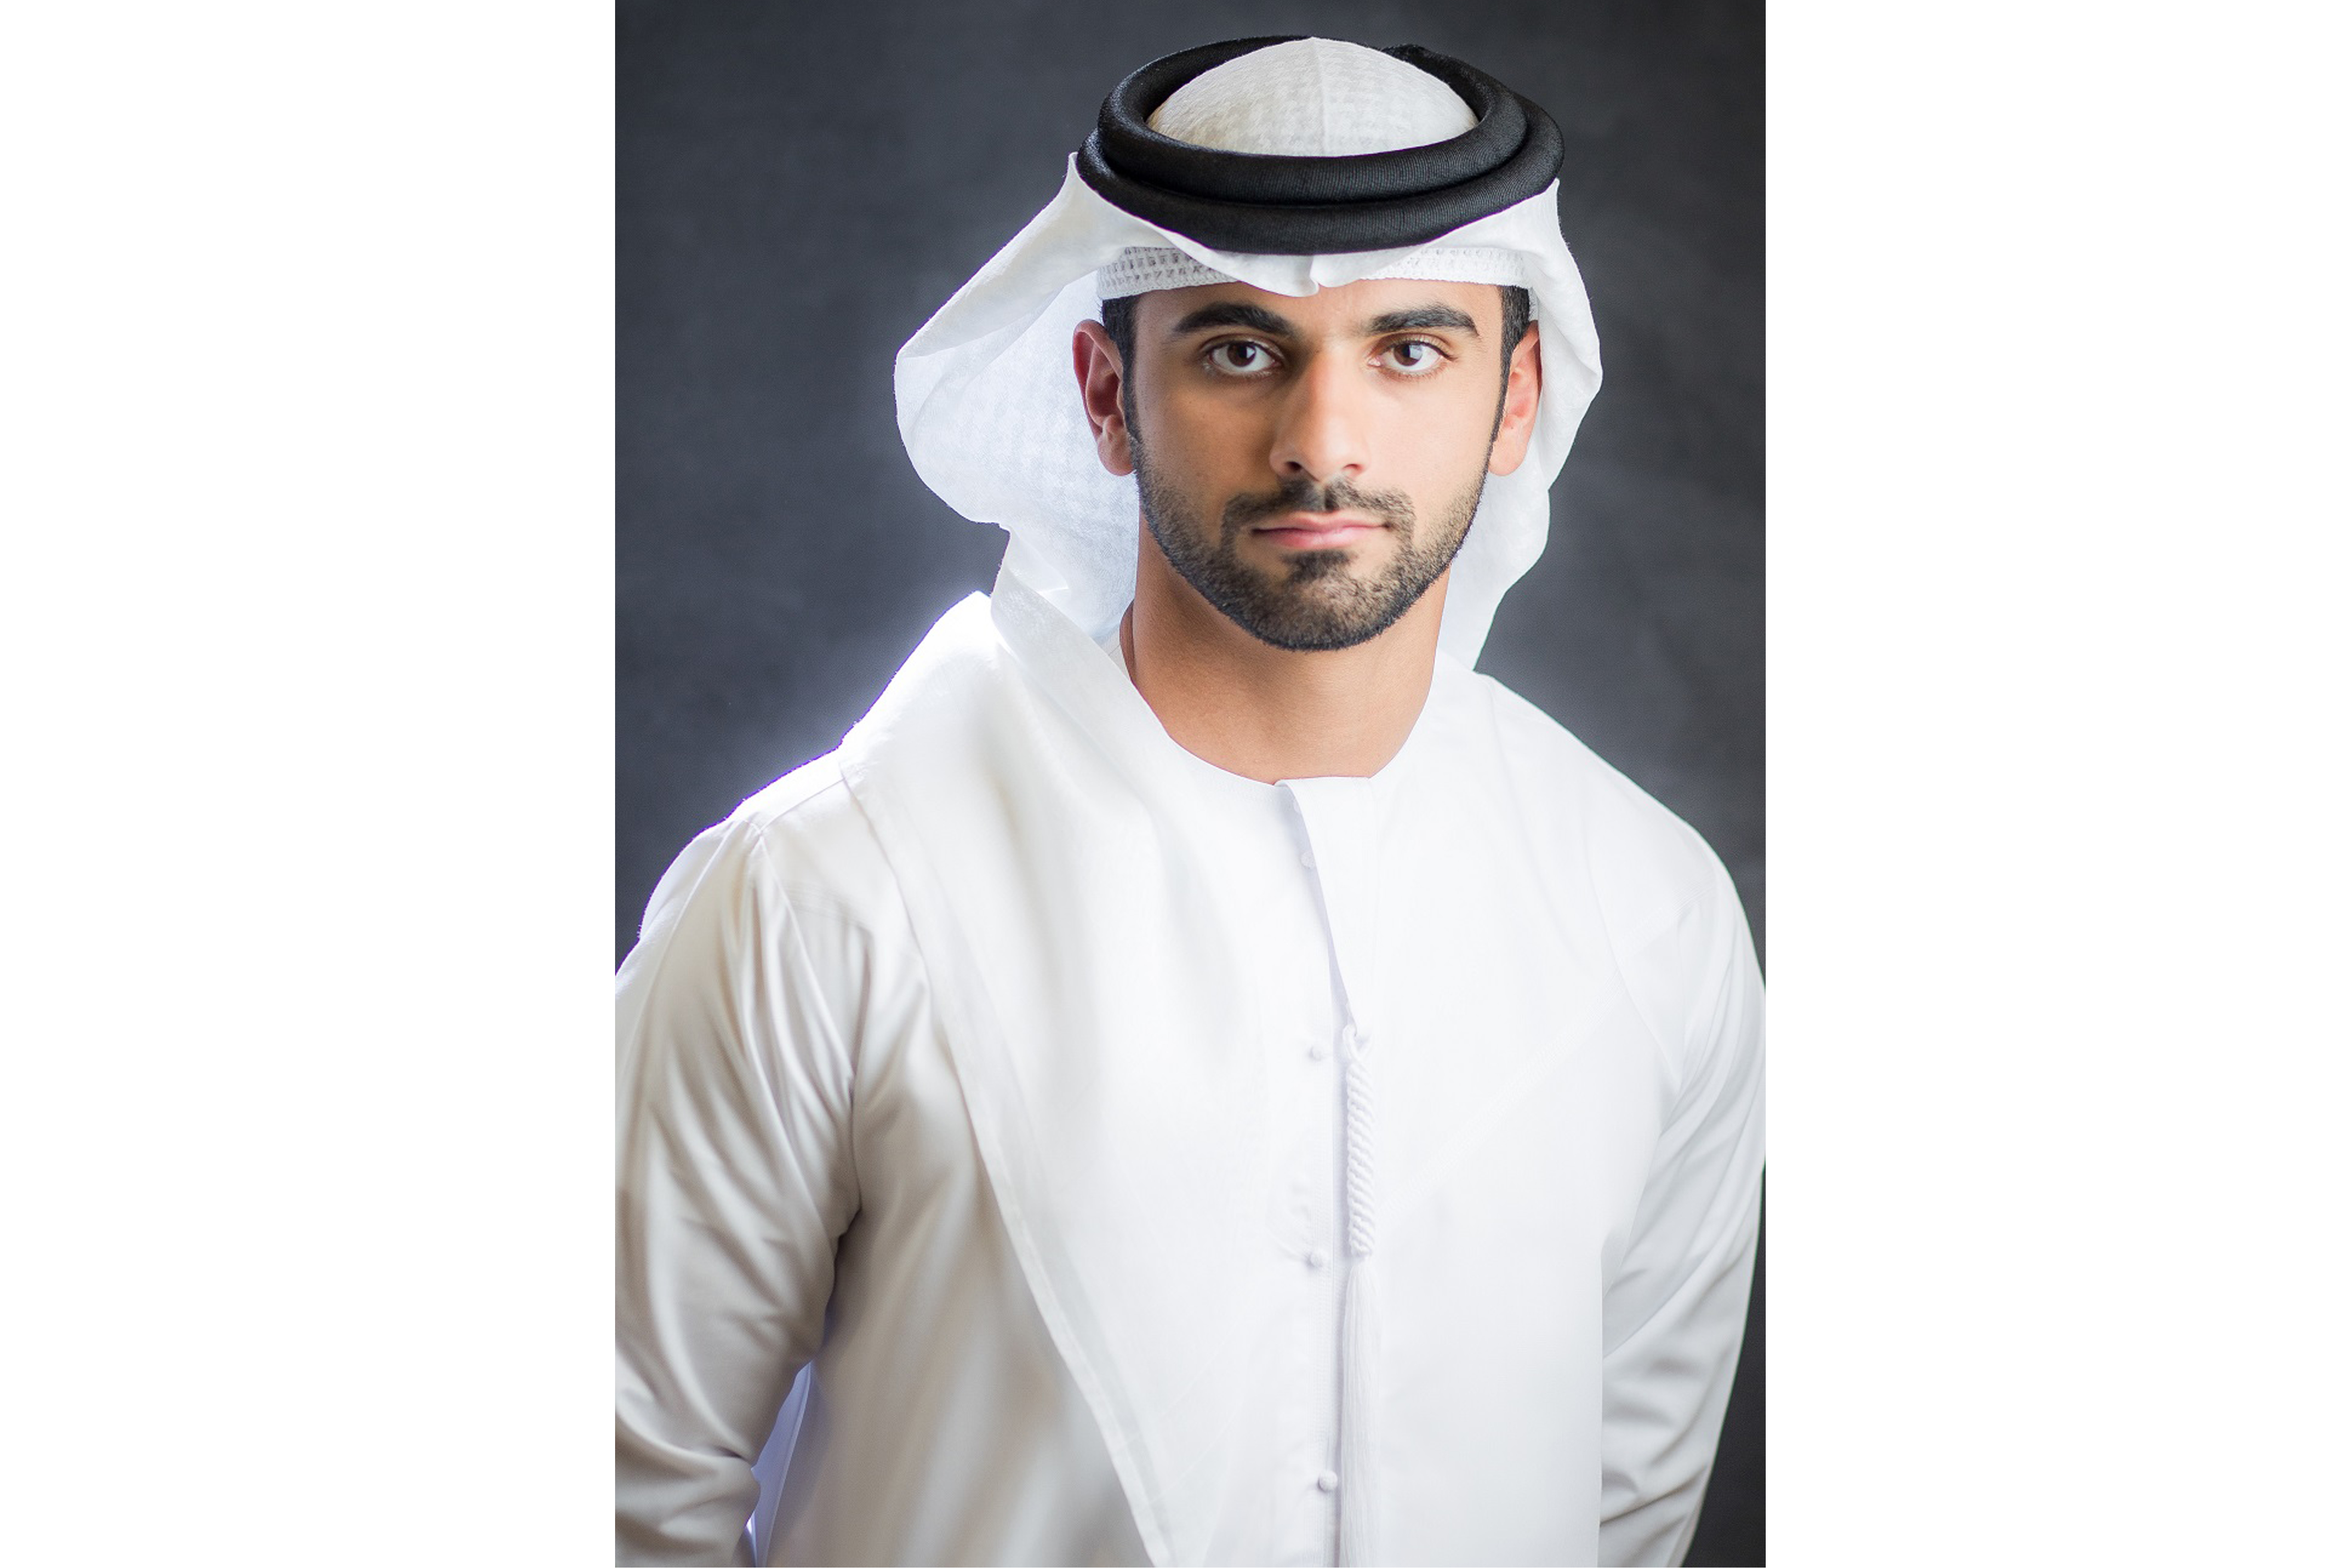 منصور بن محمد : ثقتنا كبيرة في مجلس إدارة (دبي البحري) الجديد